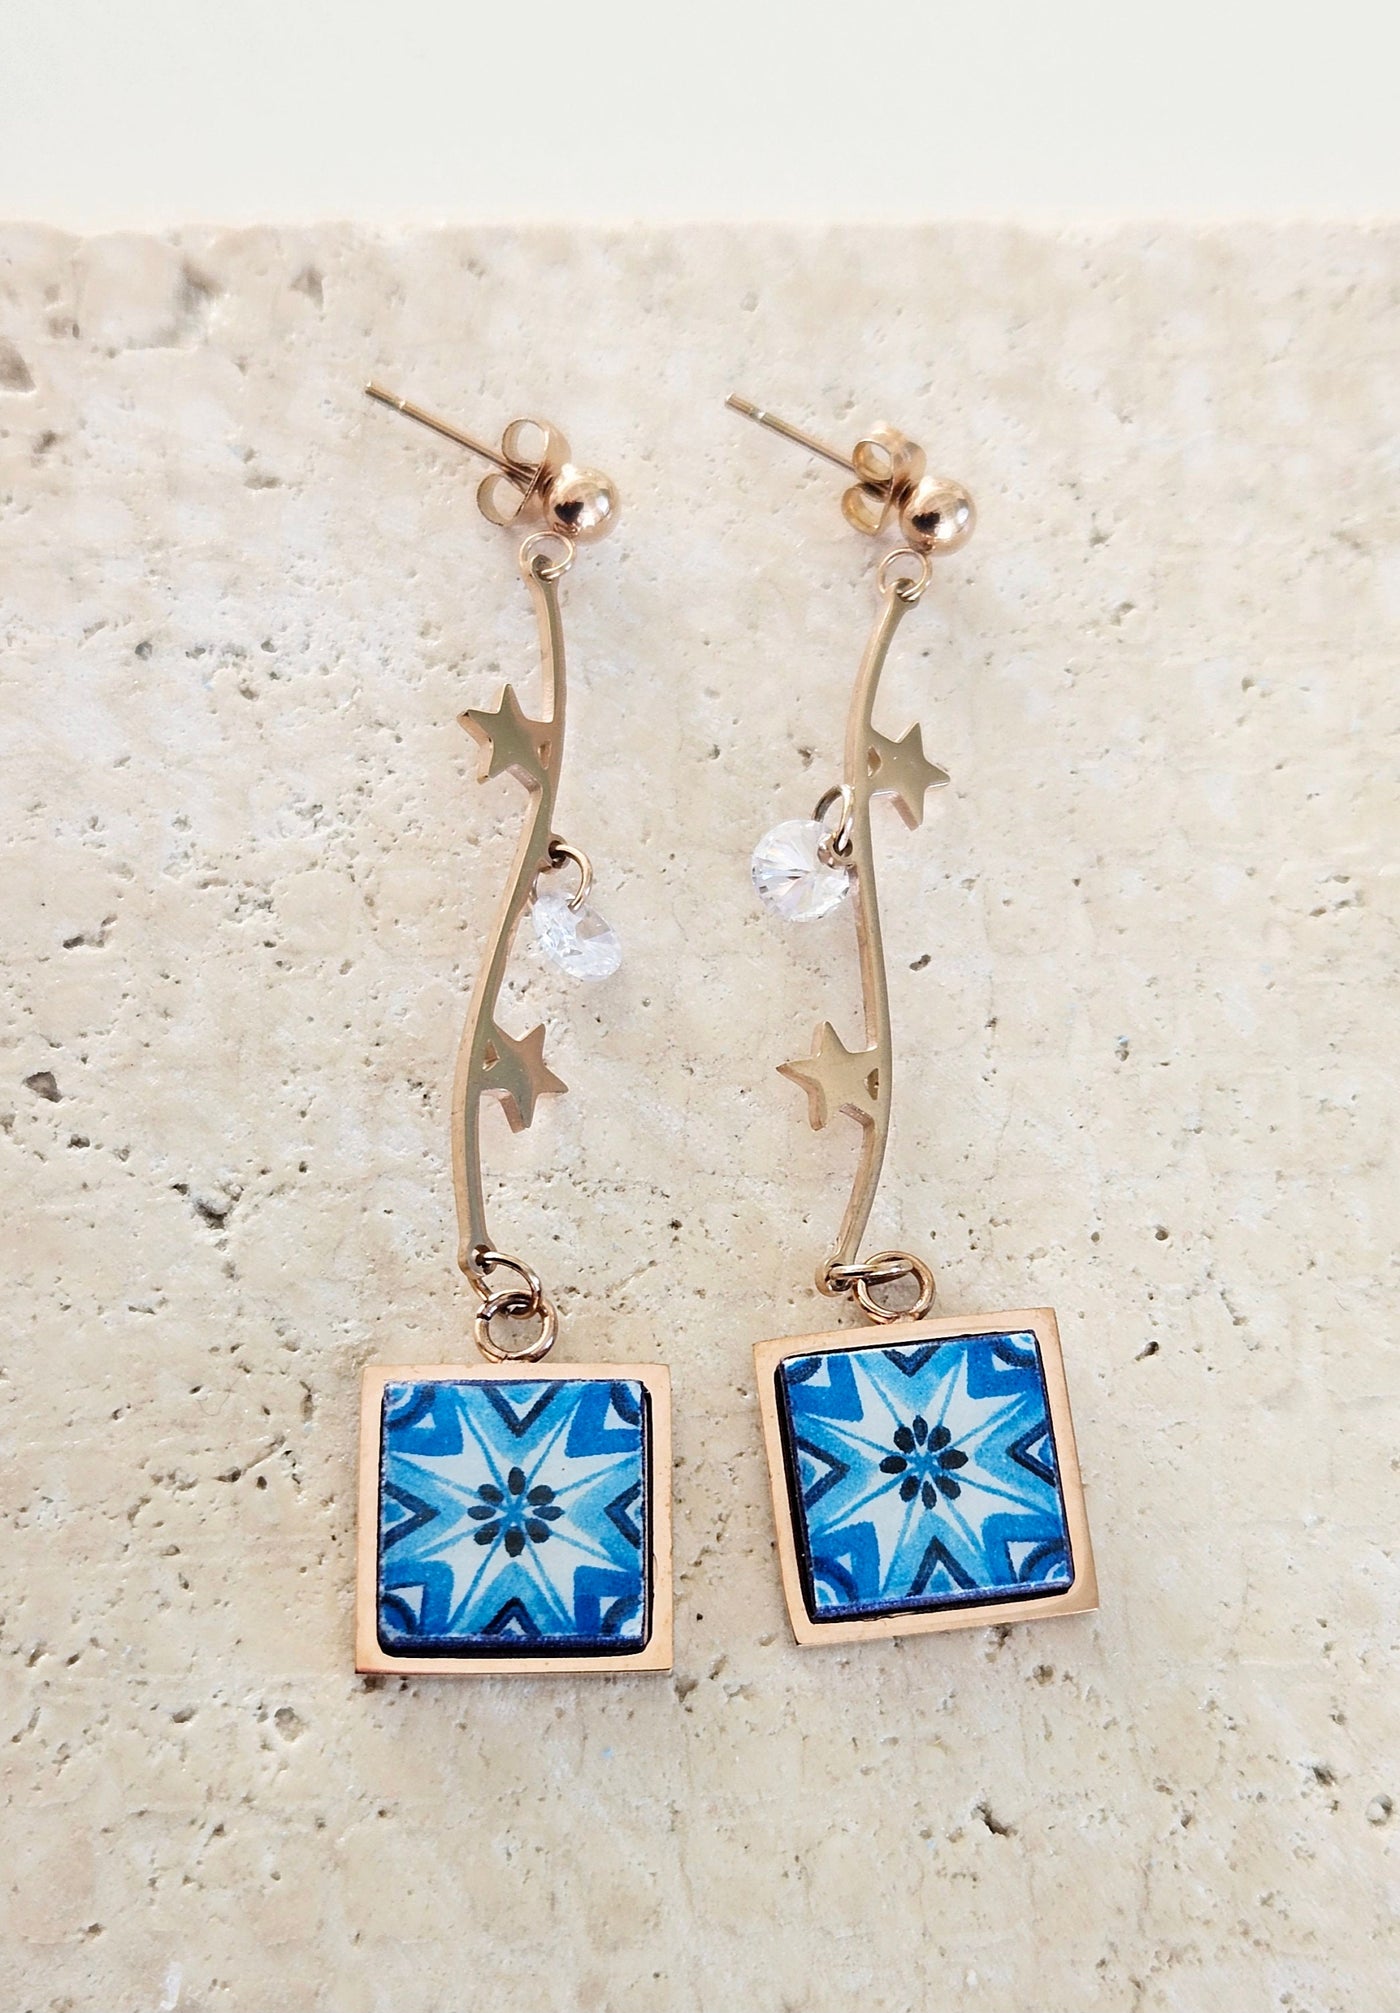 Portugal Tile Earrings Antique Azulejo Drop Earrings Rose Gold Steel Dangle Earrings Majolica Blue Tile Portuguese Dainty Women Jewelry